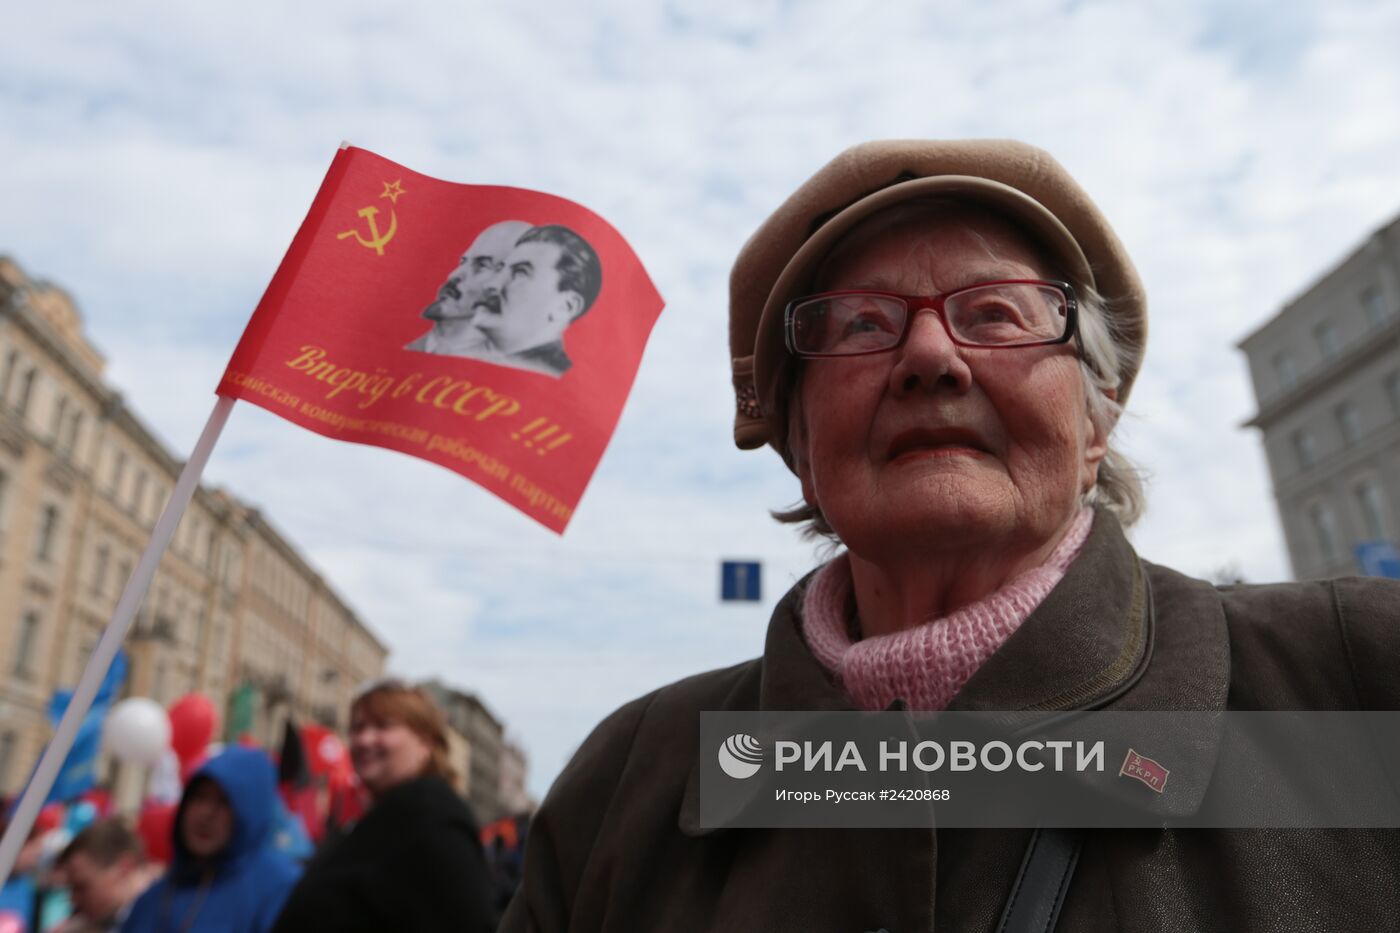 Первомайские шествия в регионах России